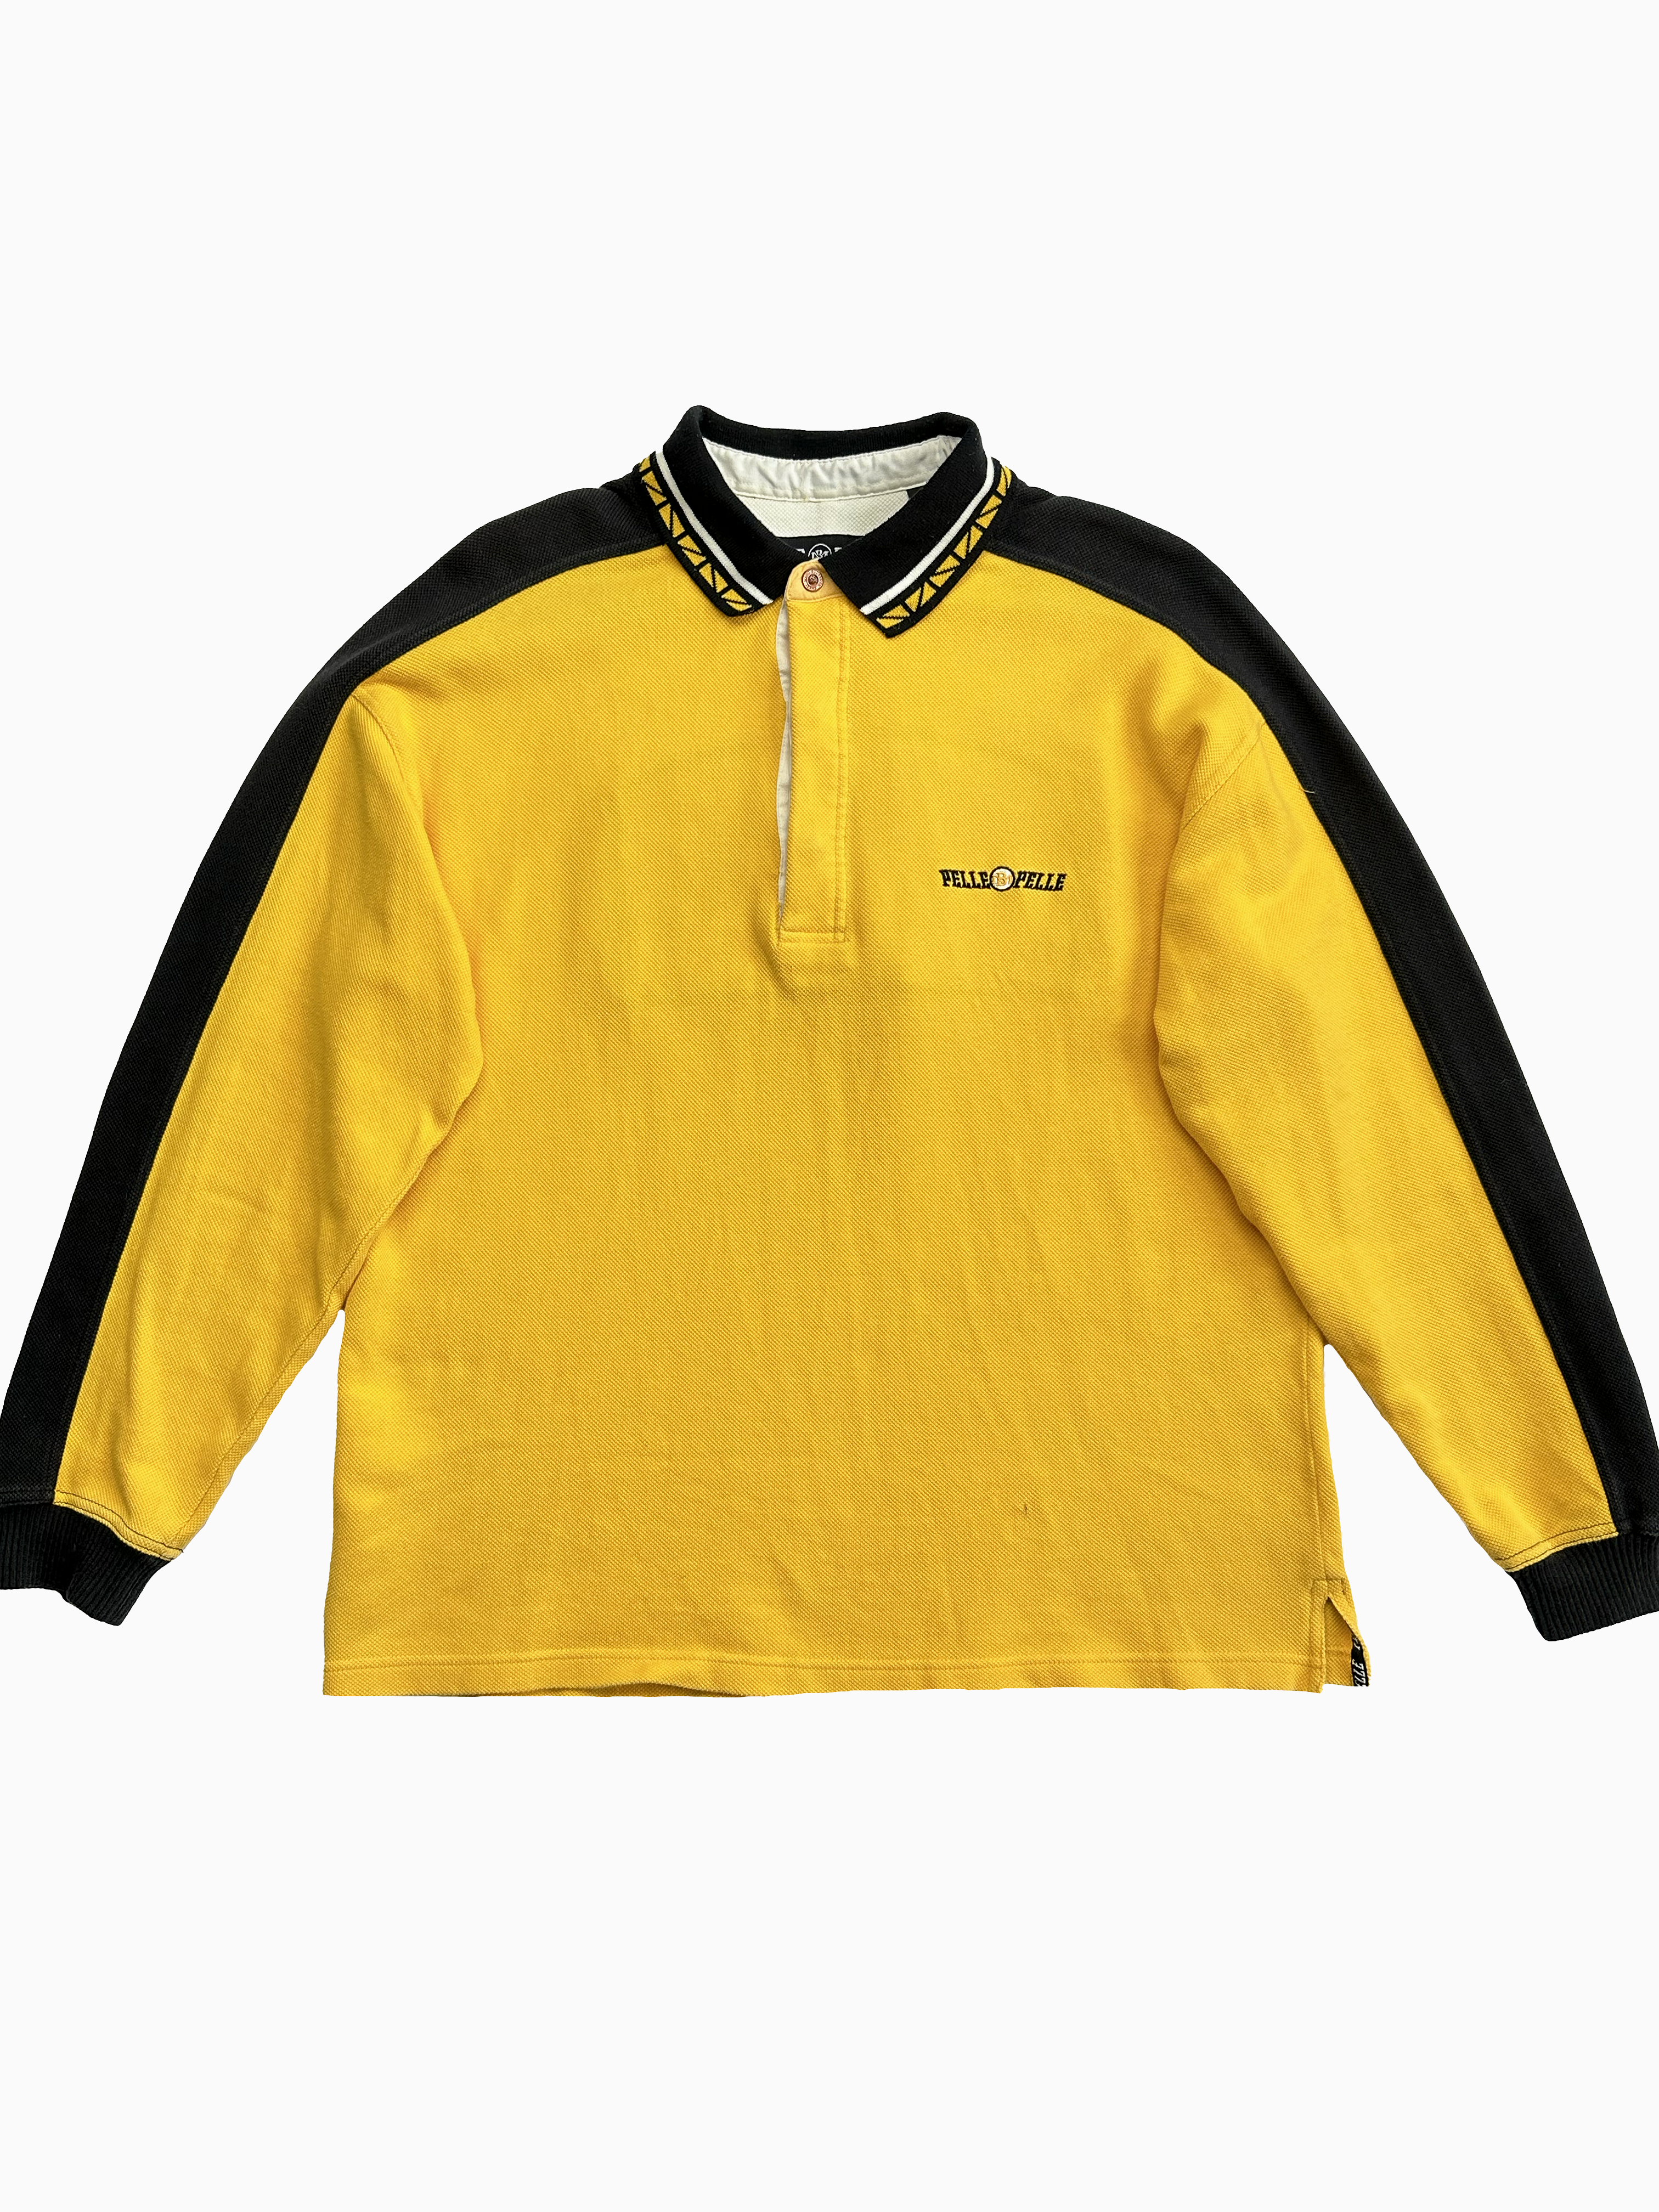 Pelle Pelle Yellow Long Sleeve Polo 90's